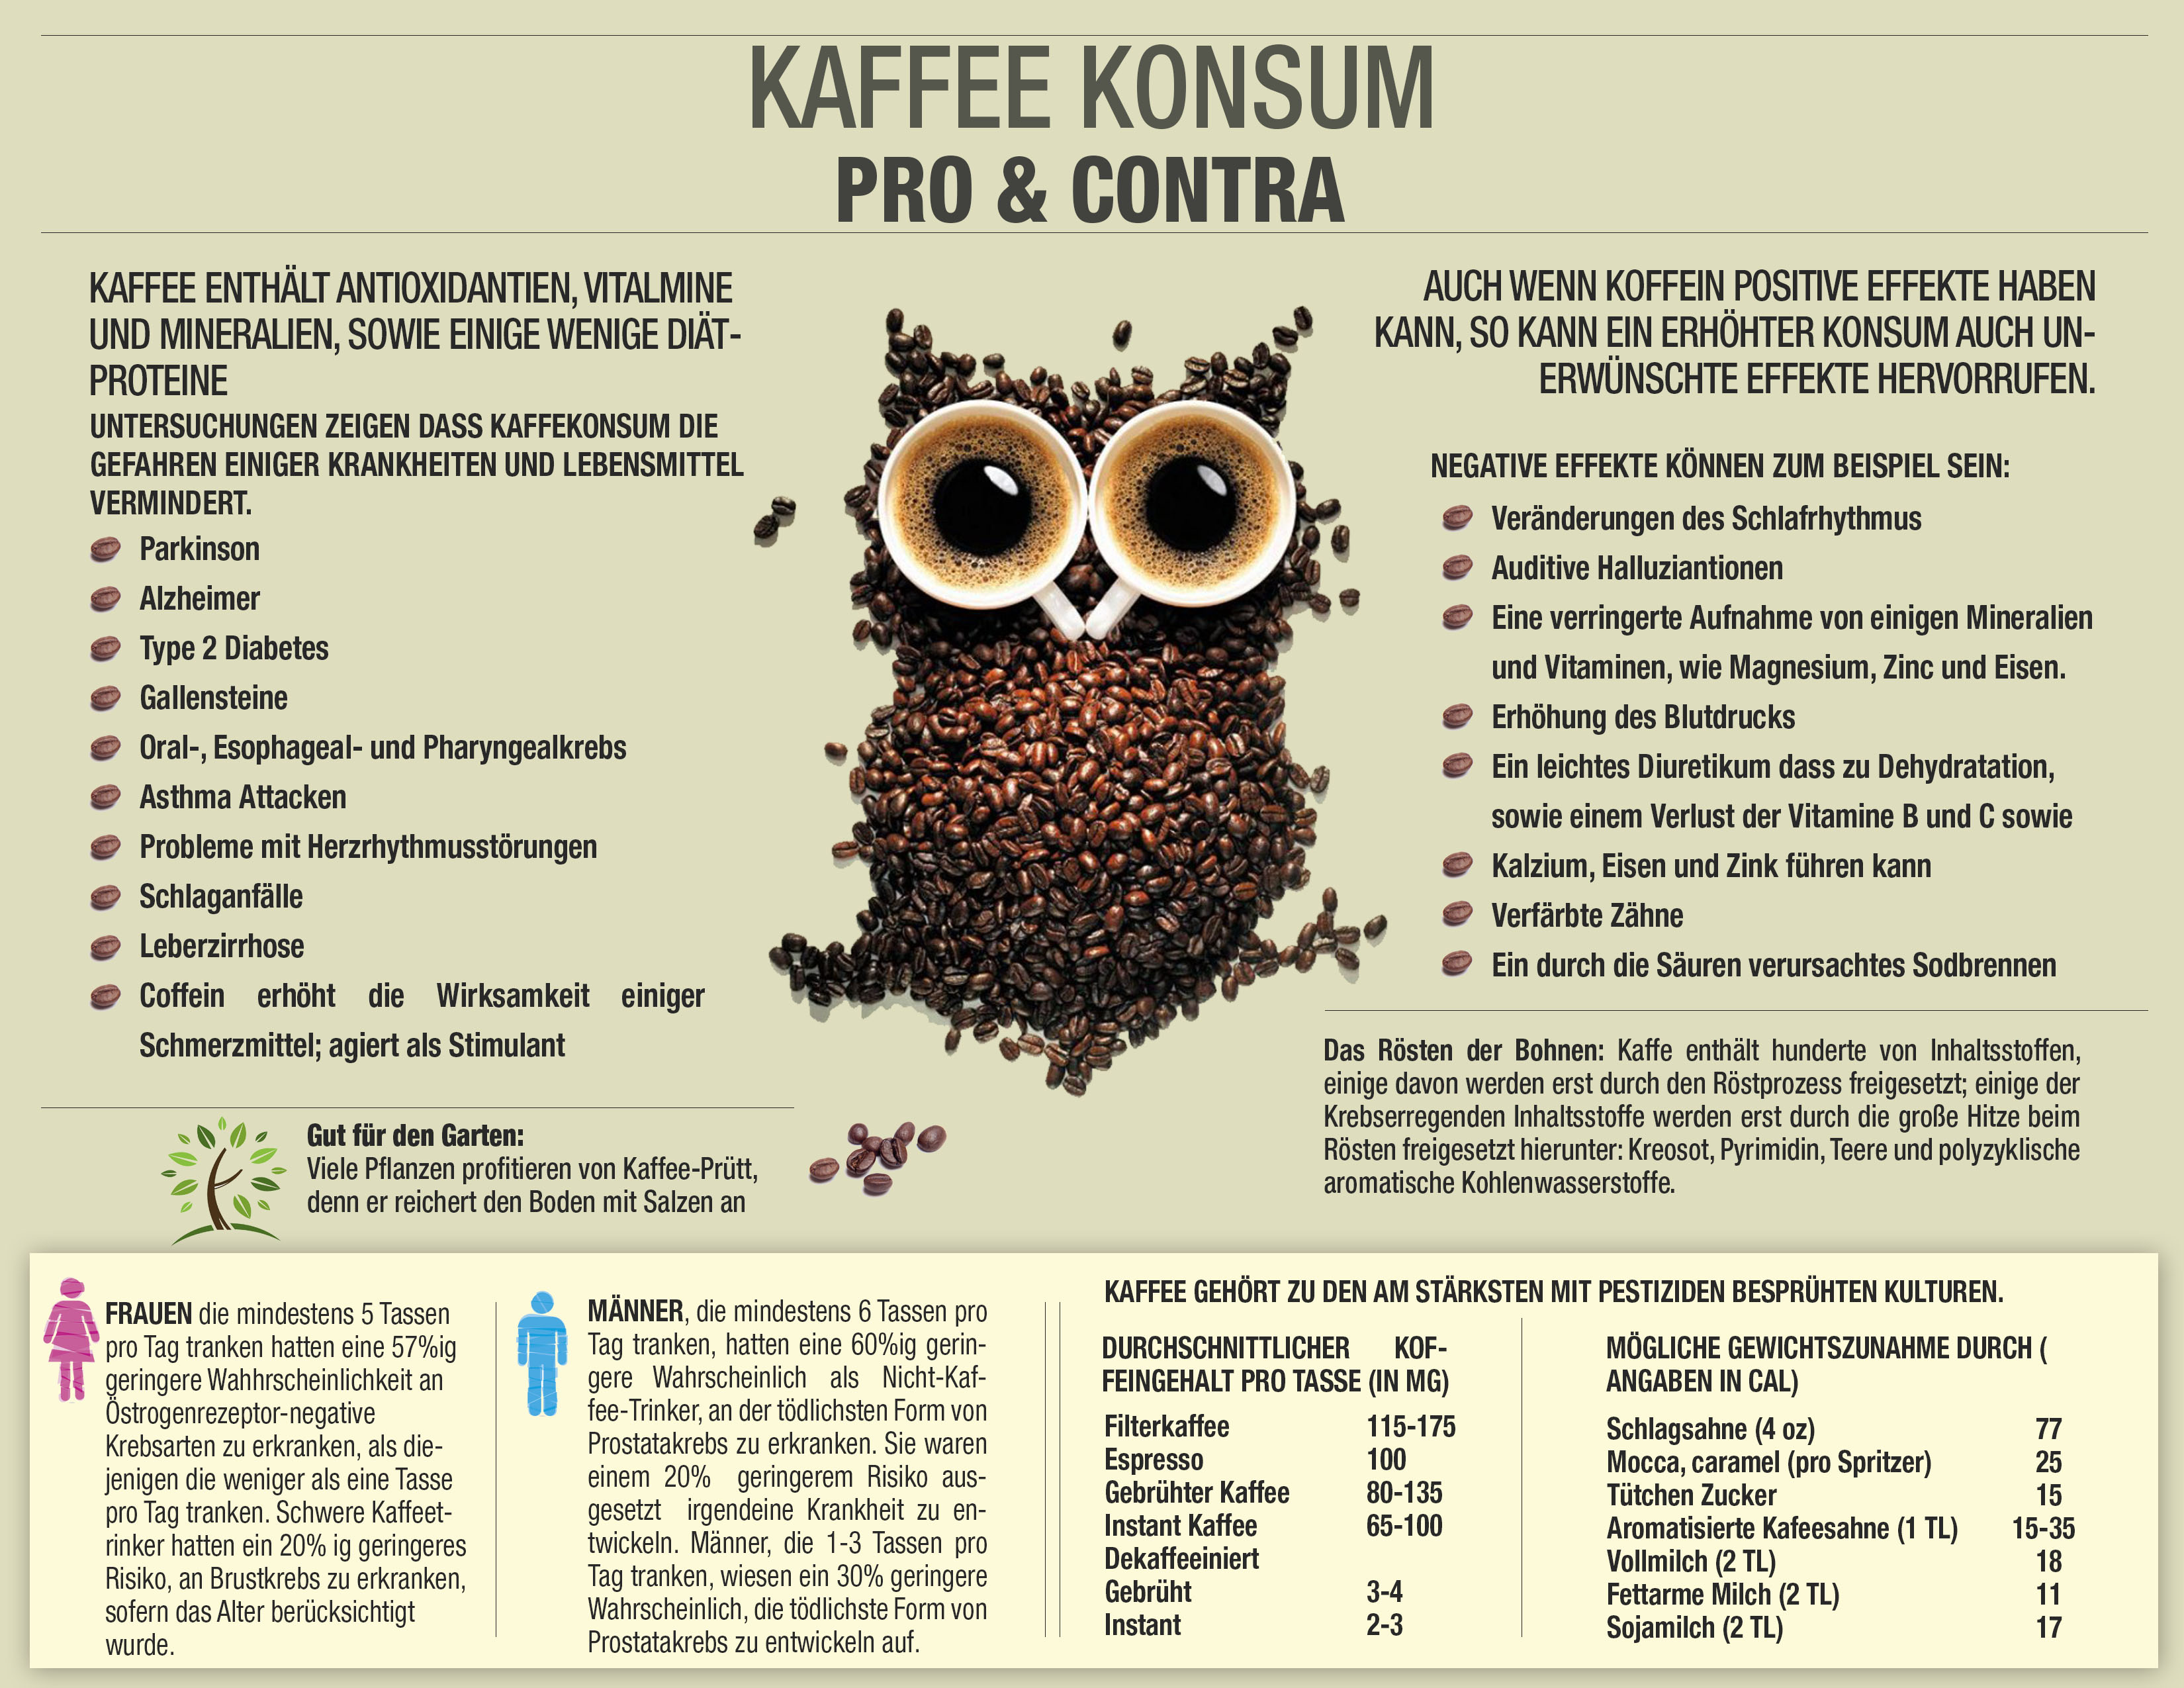 Kaffee konsum - Vor-und Nachteil